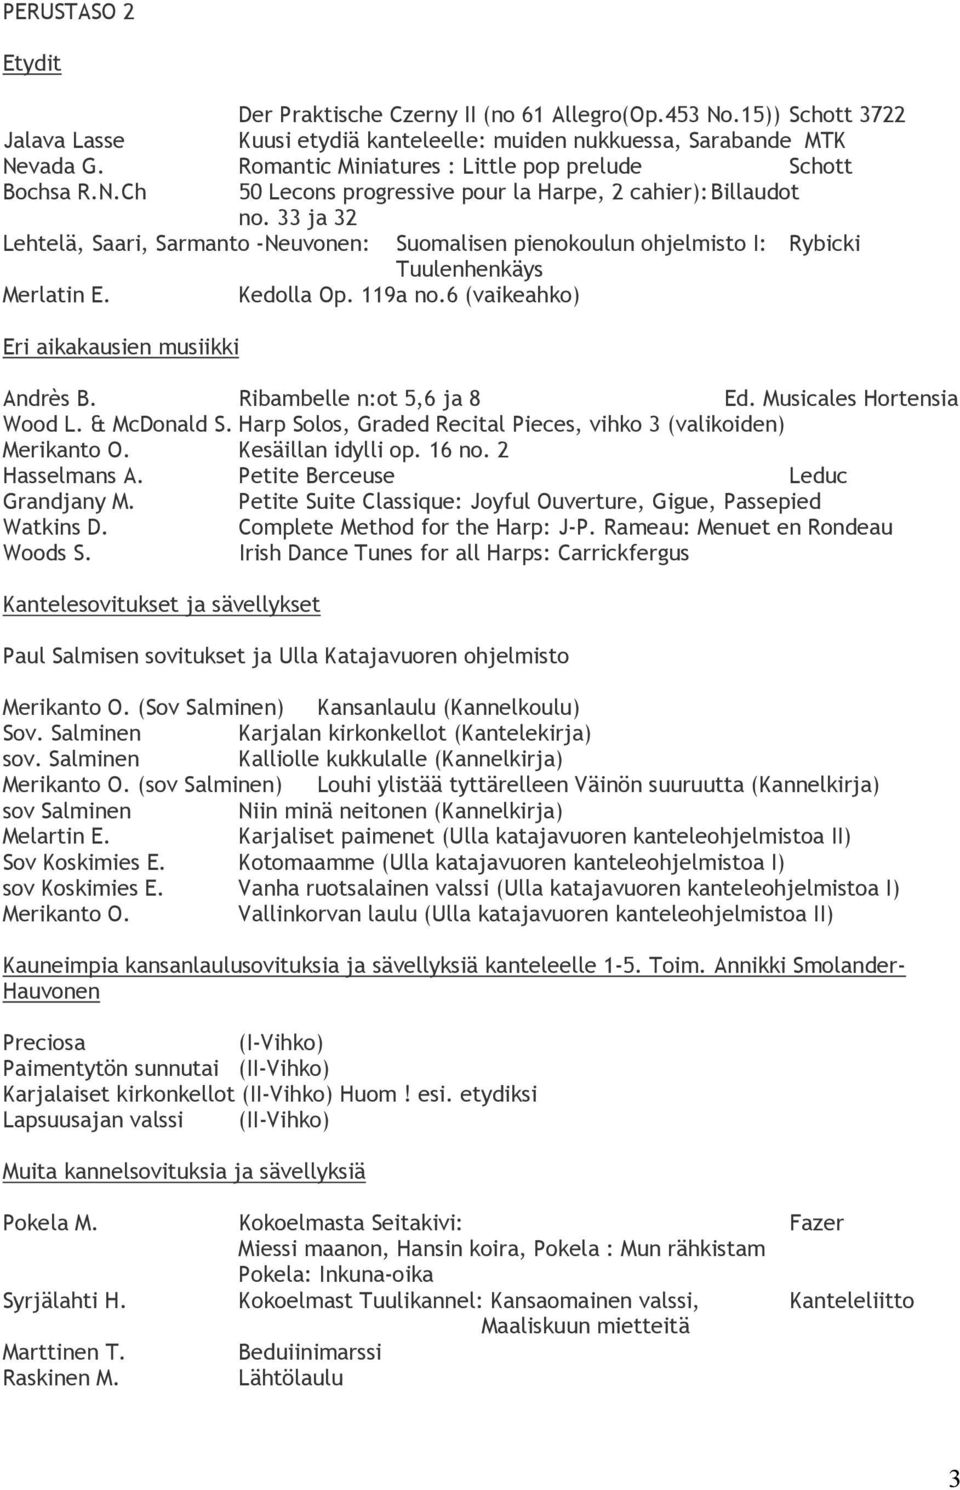 33 ja 32 Lehtelä, Saari, Sarmanto -Neuvonen: Suomalisen pienokoulun ohjelmisto I: Rybicki Tuulenhenkäys Merlatin E. Kedolla Op. 119a no.6 (vaikeahko) Andrès B. Ribambelle n:ot 5,6 ja 8 Ed.